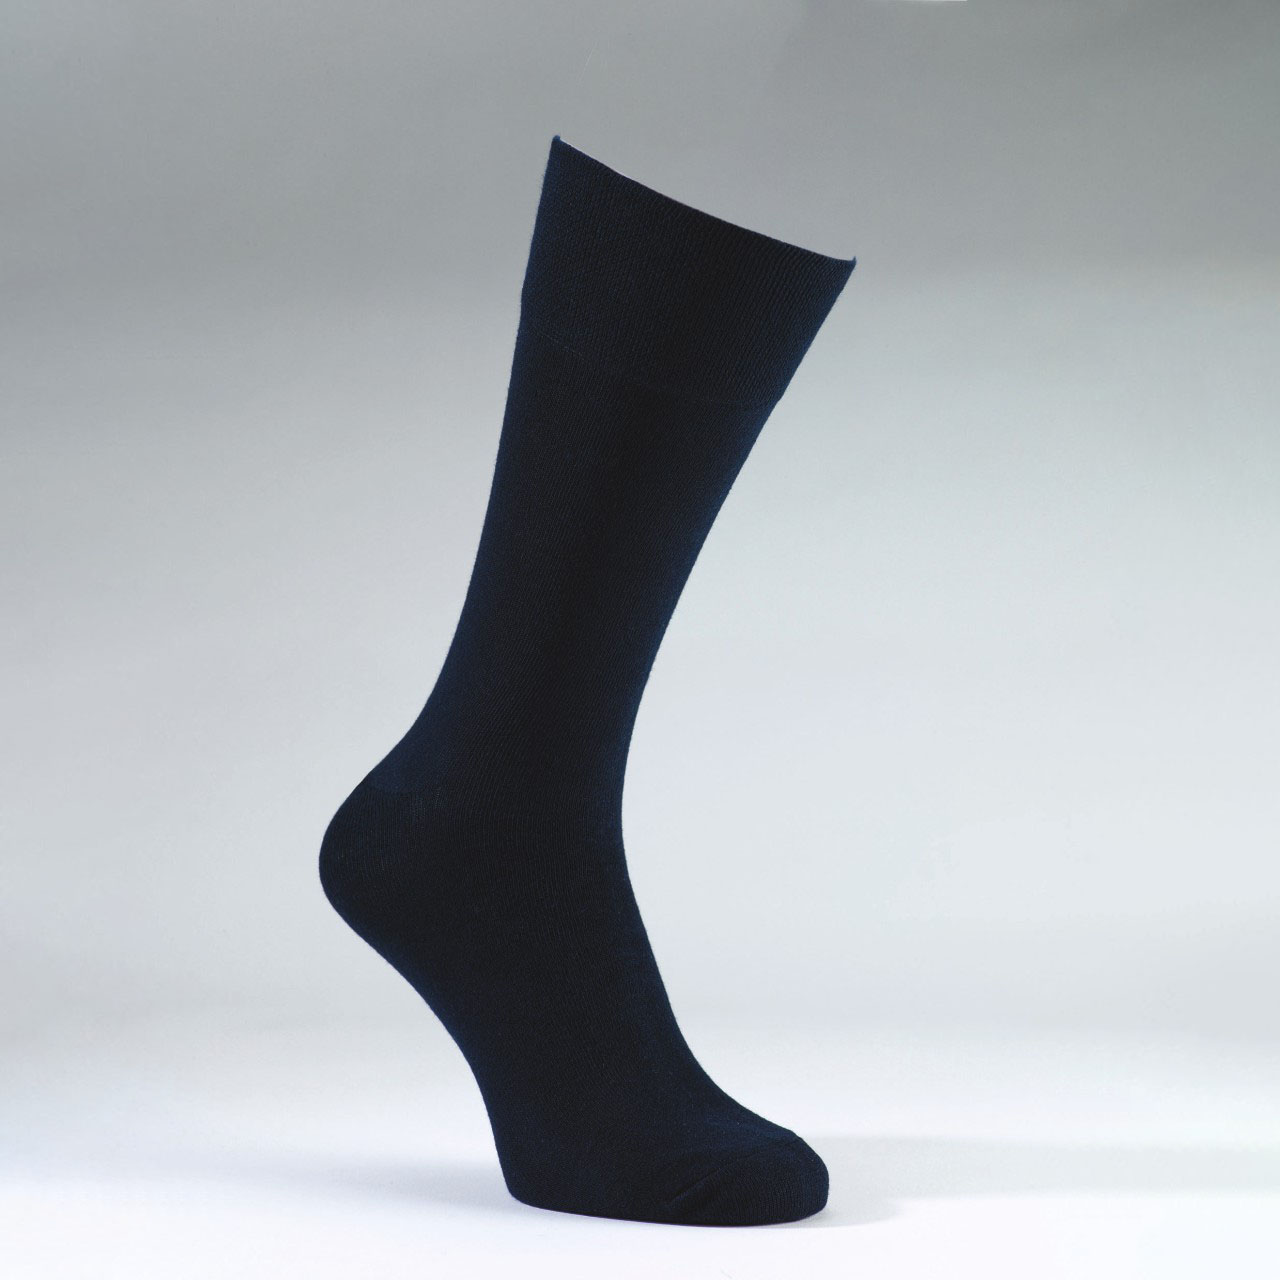 Navy, Ladies Pringle Gentle Grip Socks - Pack of 3